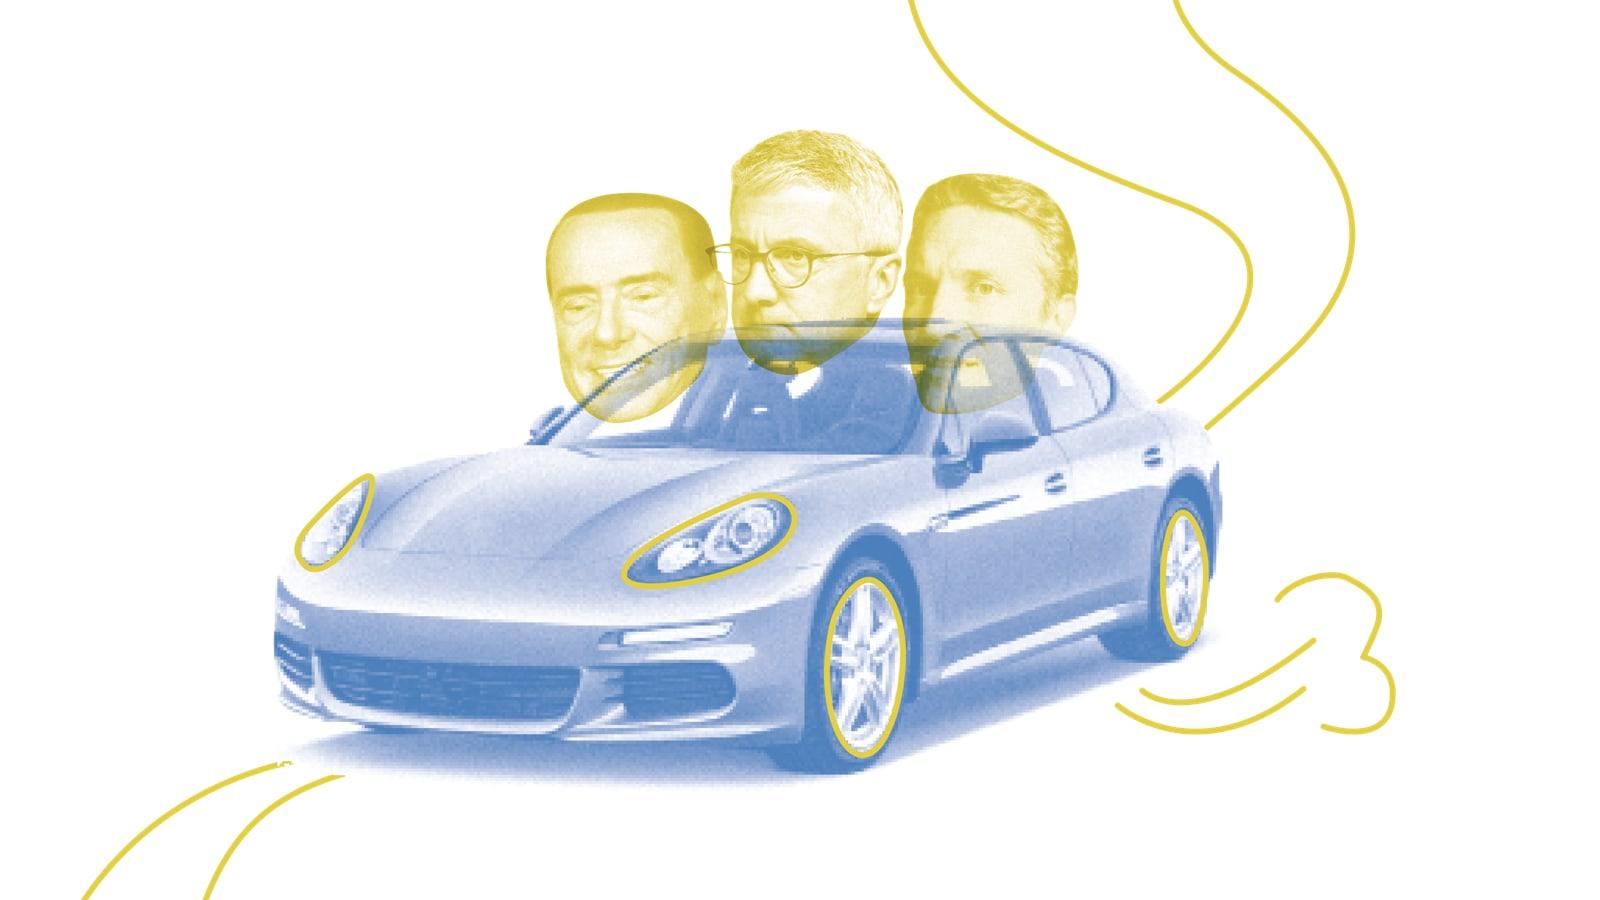 Samwer, Berlusconi und Stadler in einem Porsche